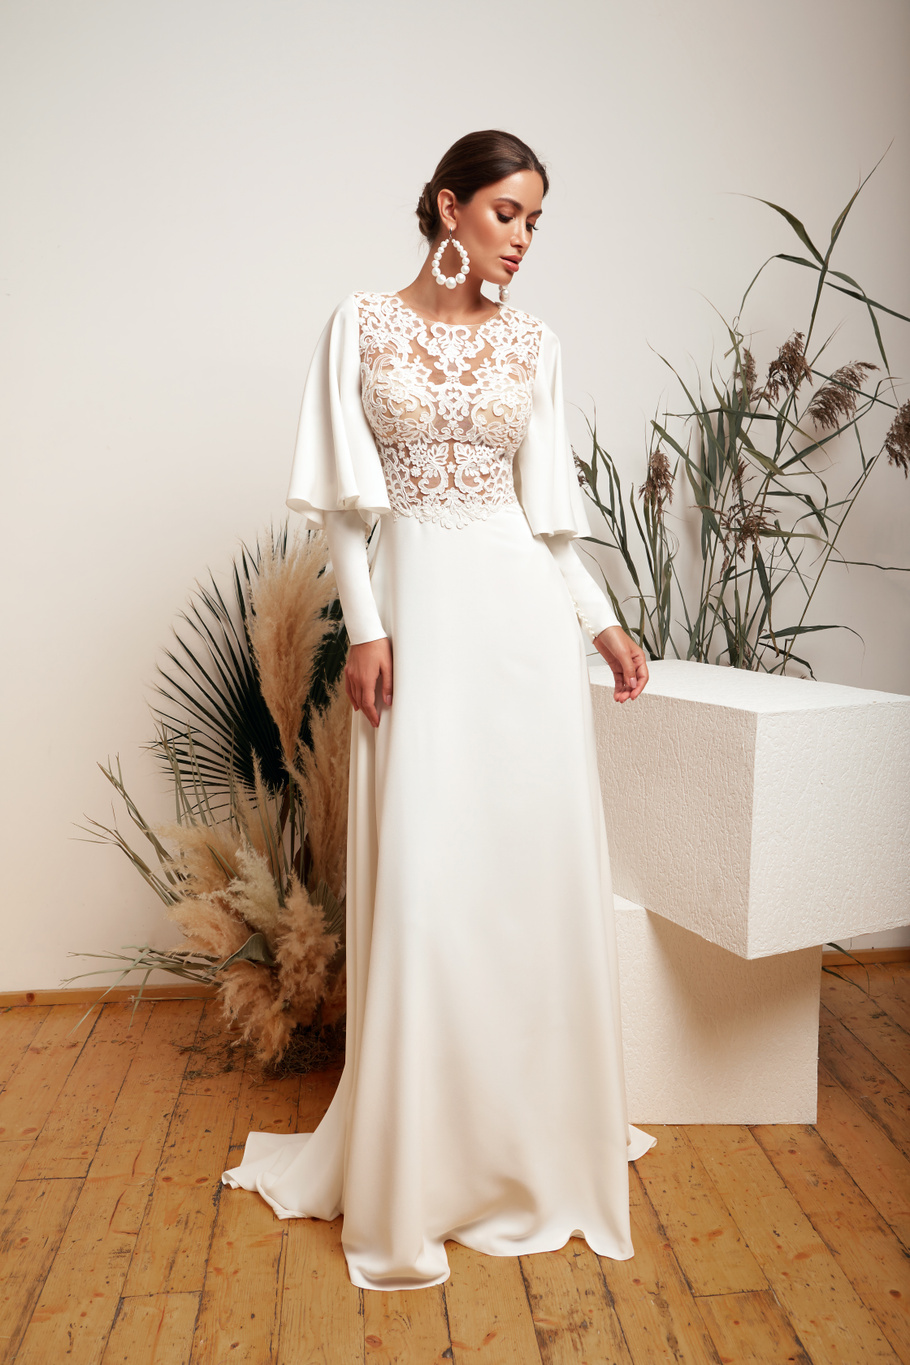 Купить свадебное платье «Виллис» Мэрри Марк из коллекции 2020 года в Ярославле